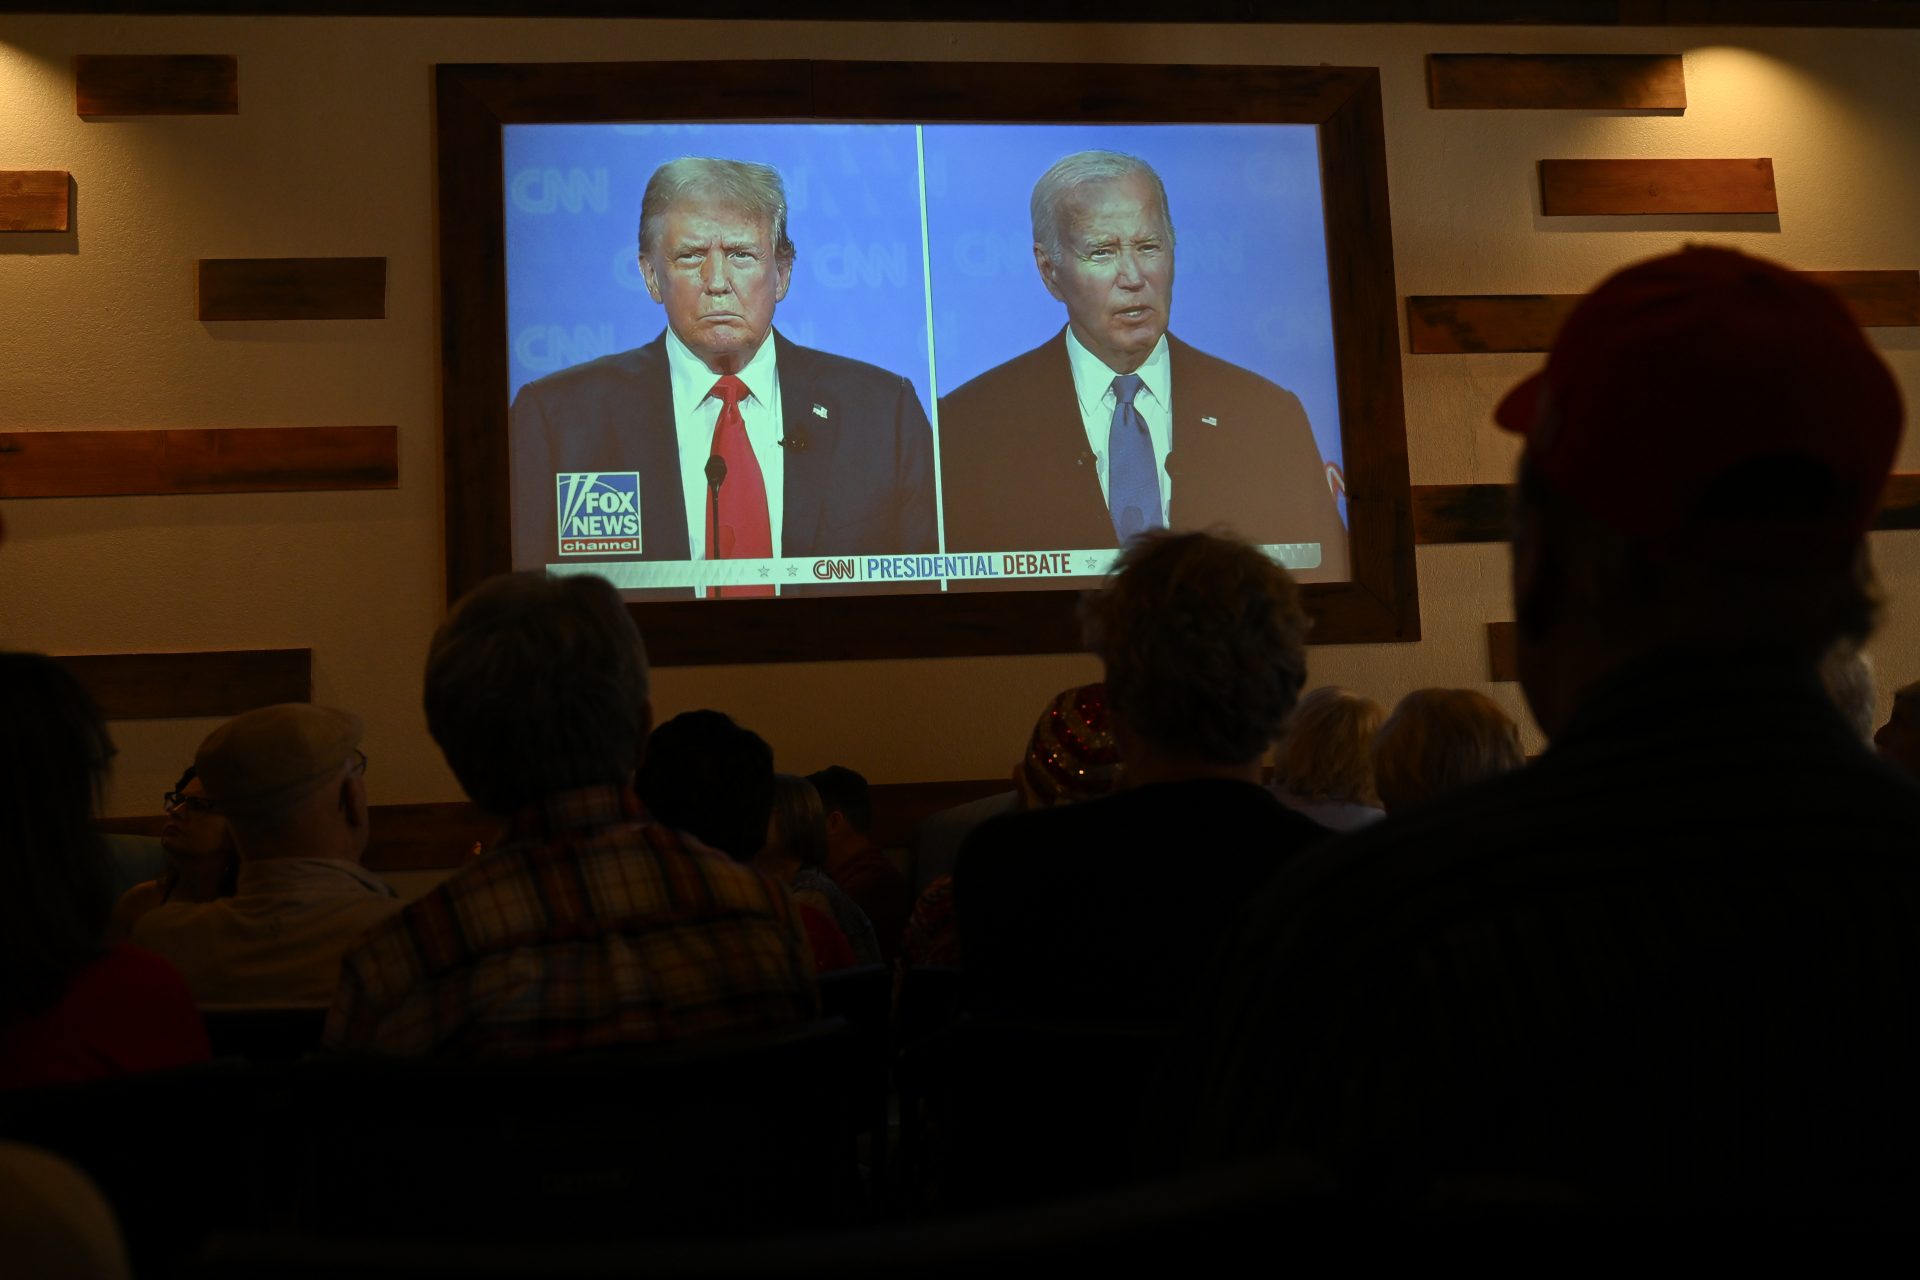 Novedad en los debates presidenciales: pausas publicitarias